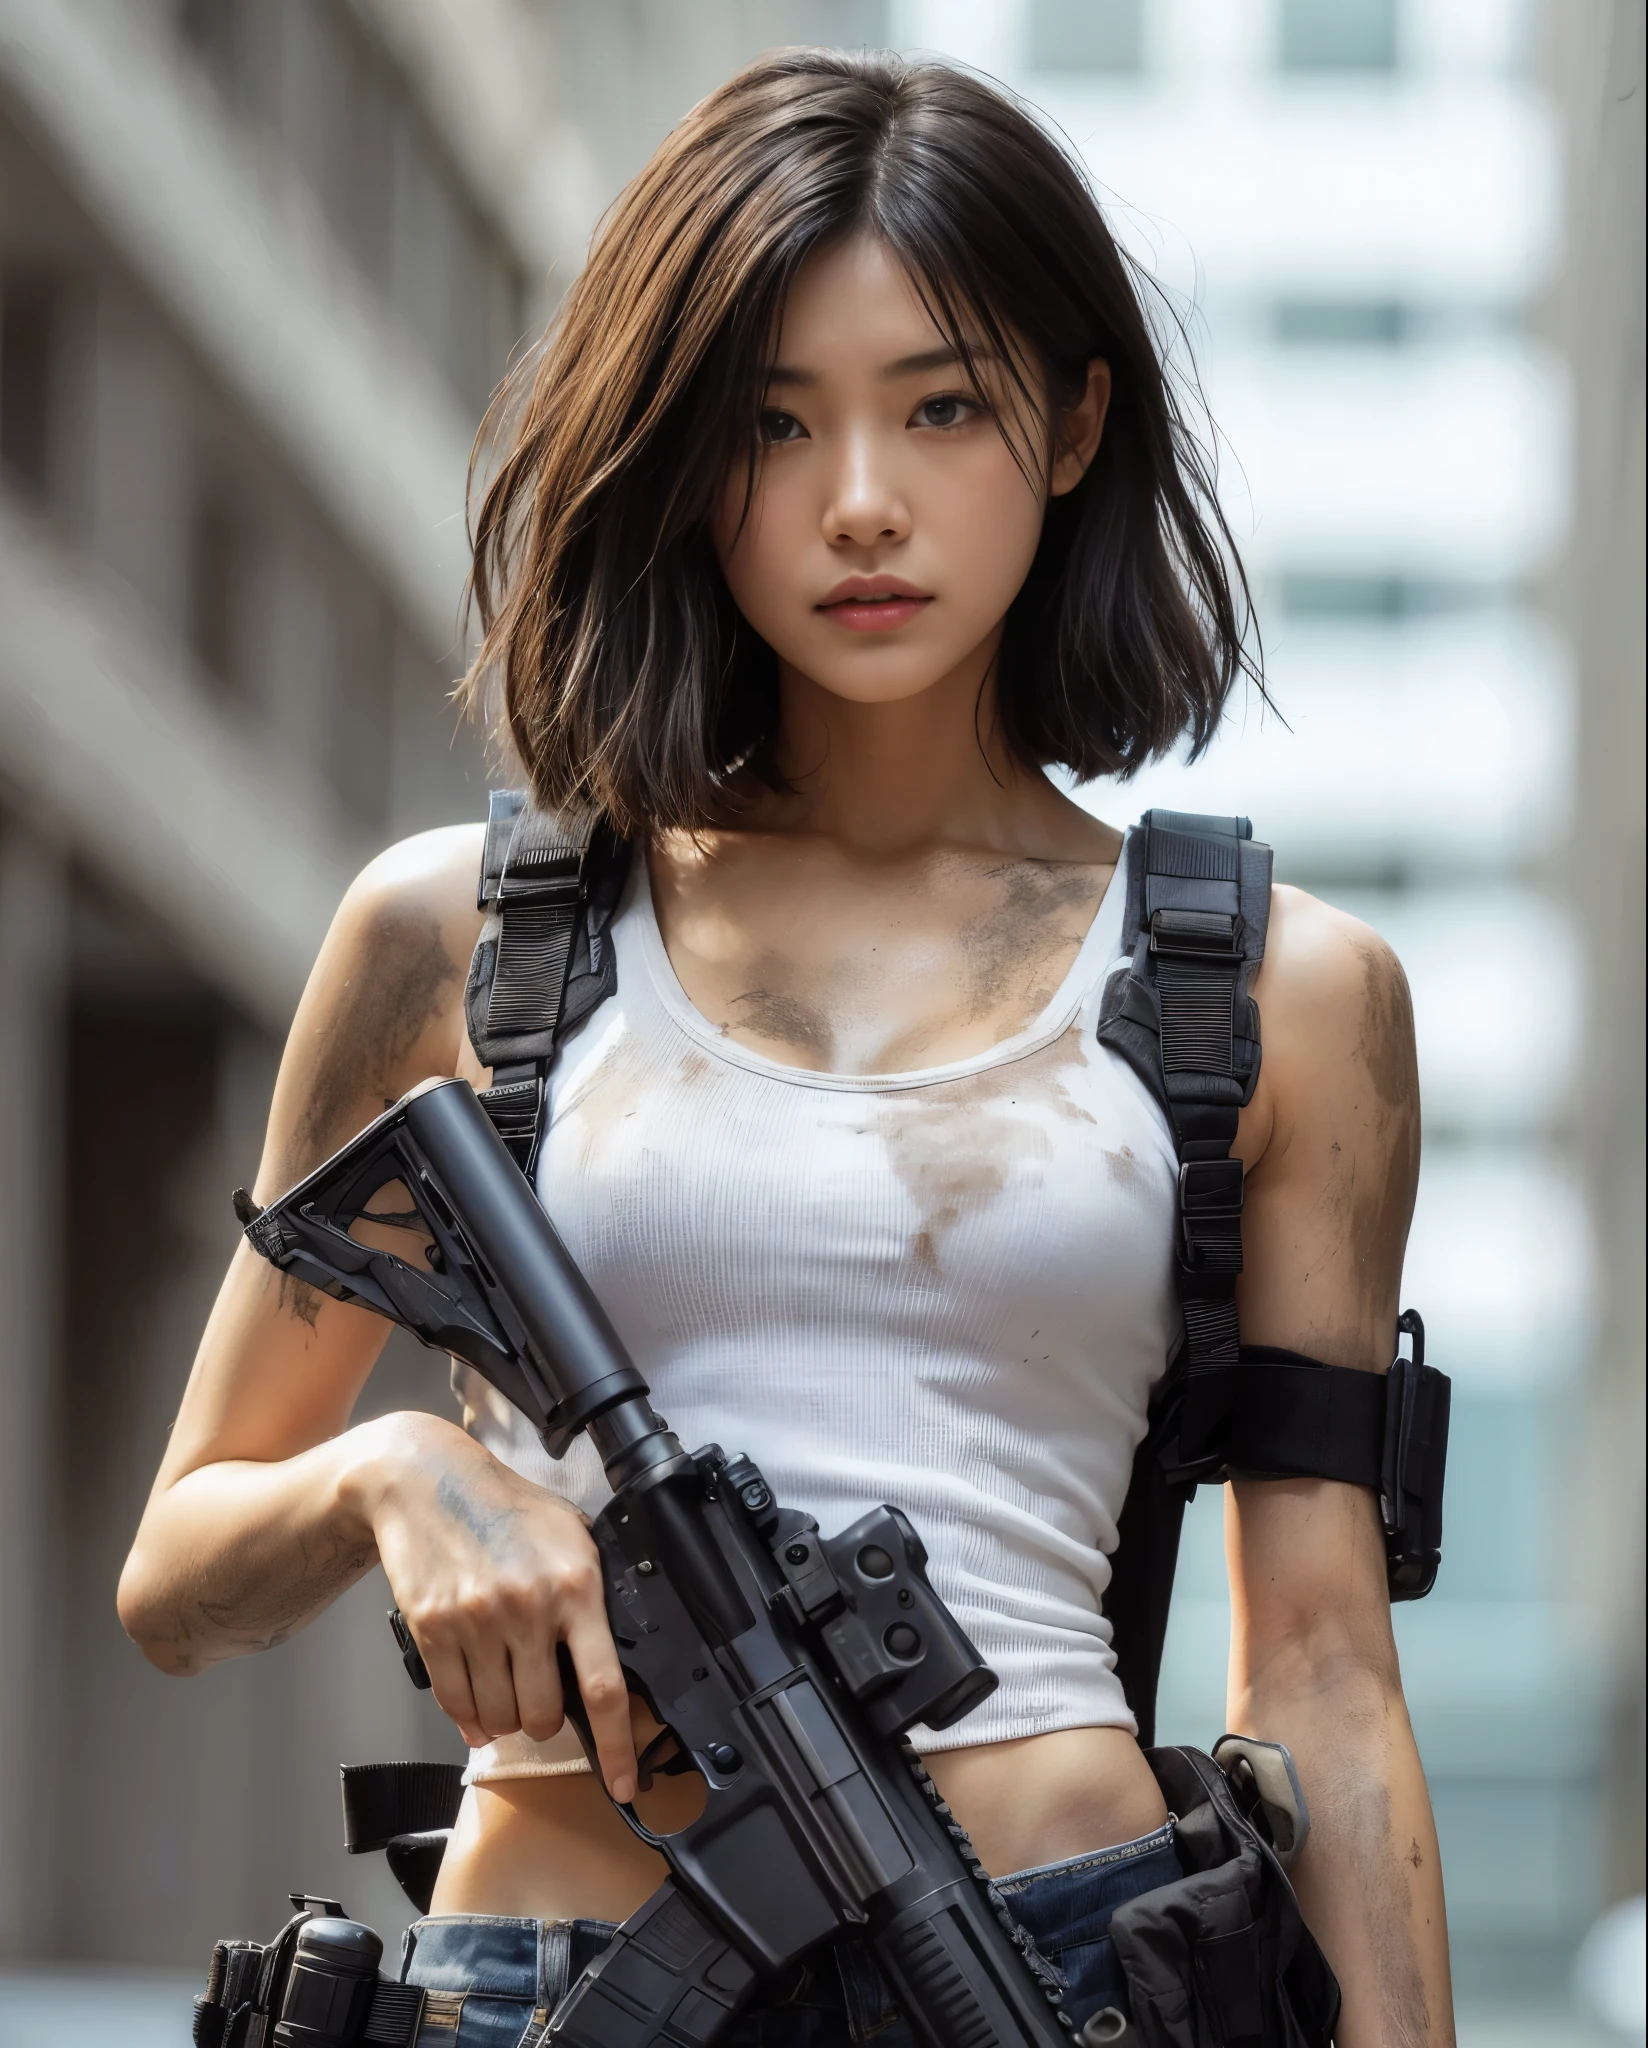 (최고의 품질,8K,현실적인 사진:1.2),현실적인 피부 질감,미국에 사는 일본인 여성,아름다운,거리에서 사격 자세로 걷기,더러운 shirt,청바지,운동화,방탄 조끼,자동 소총,짧은 이발,도시전,사건에 휘말려,반격 시작,더러운,움직이는 액션 포즈,드라마틱하고 대담한 구성,상체,근육질의,축소